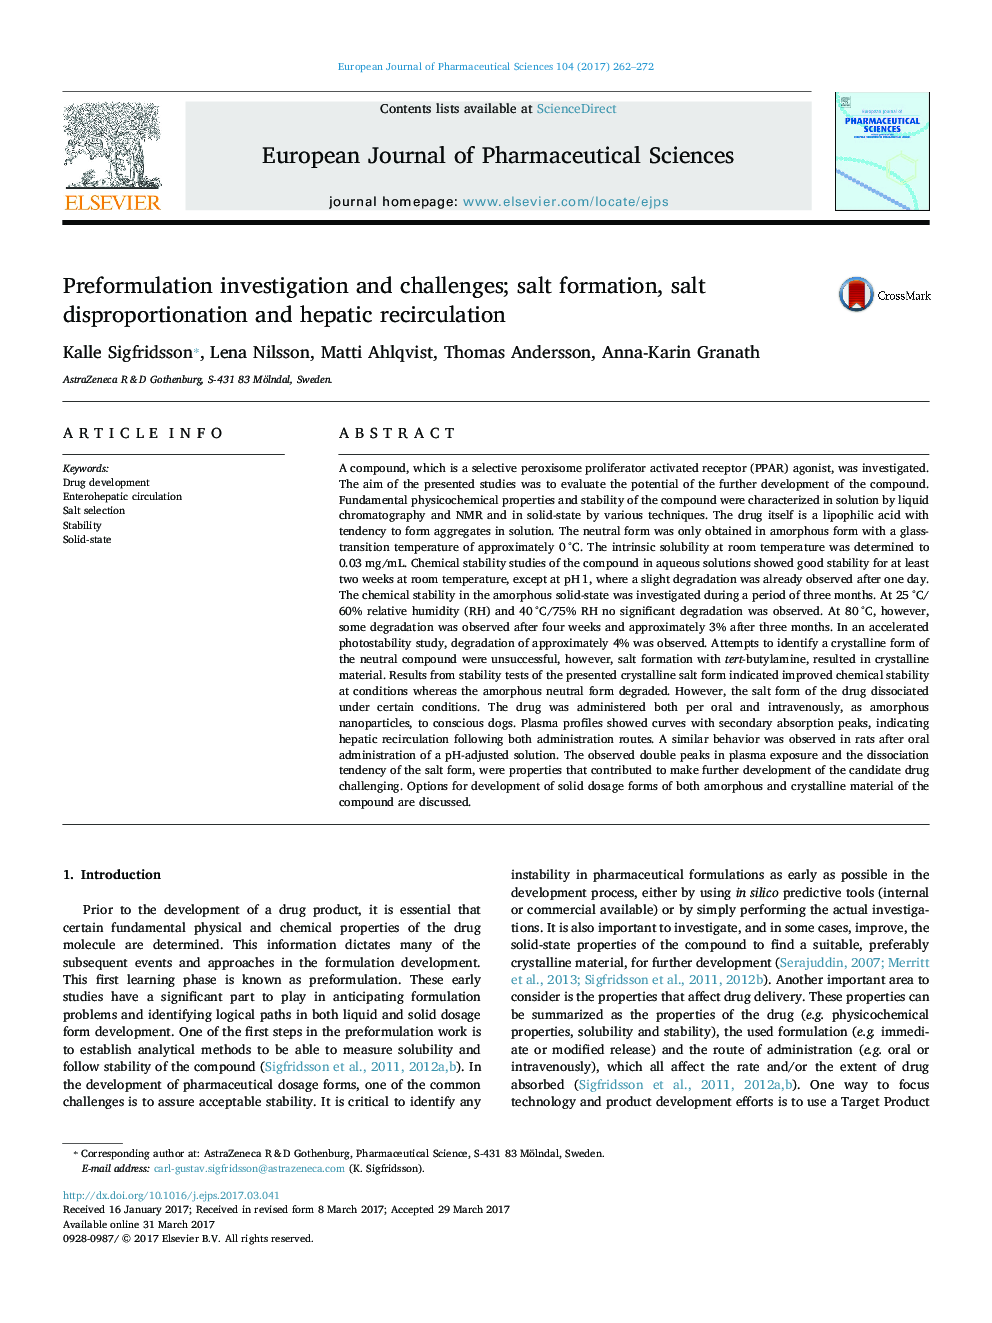 Preformulation investigation and challenges; salt formation, salt disproportionation and hepatic recirculation